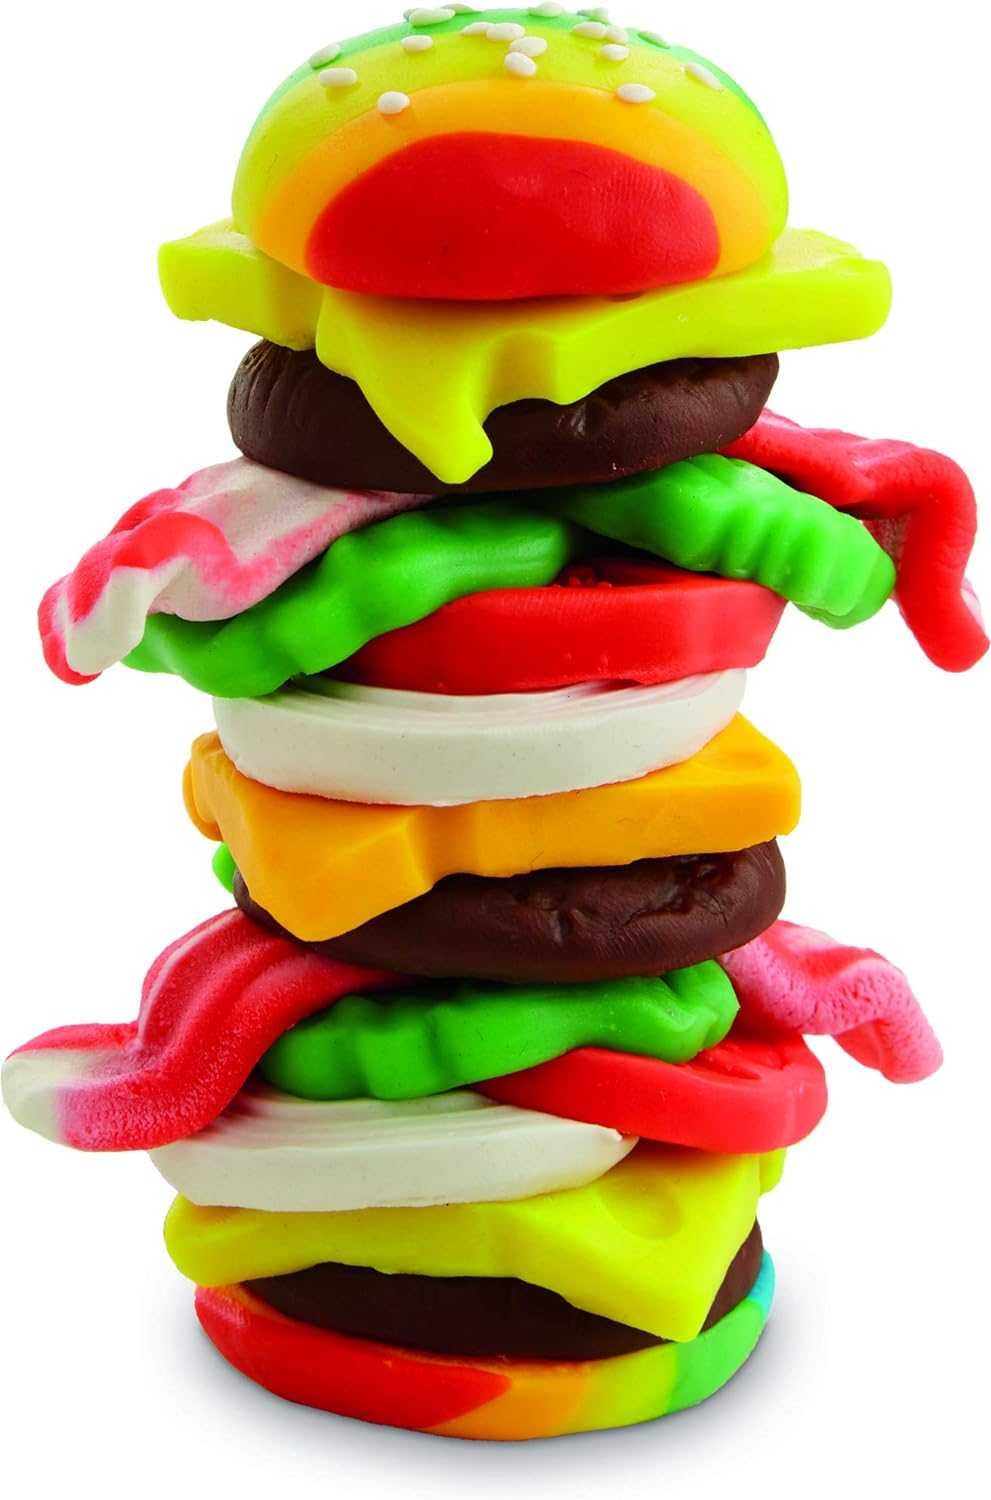 Ciastolina plastelina Play Doh kolorowa zestaw 20 tub bezpieczna